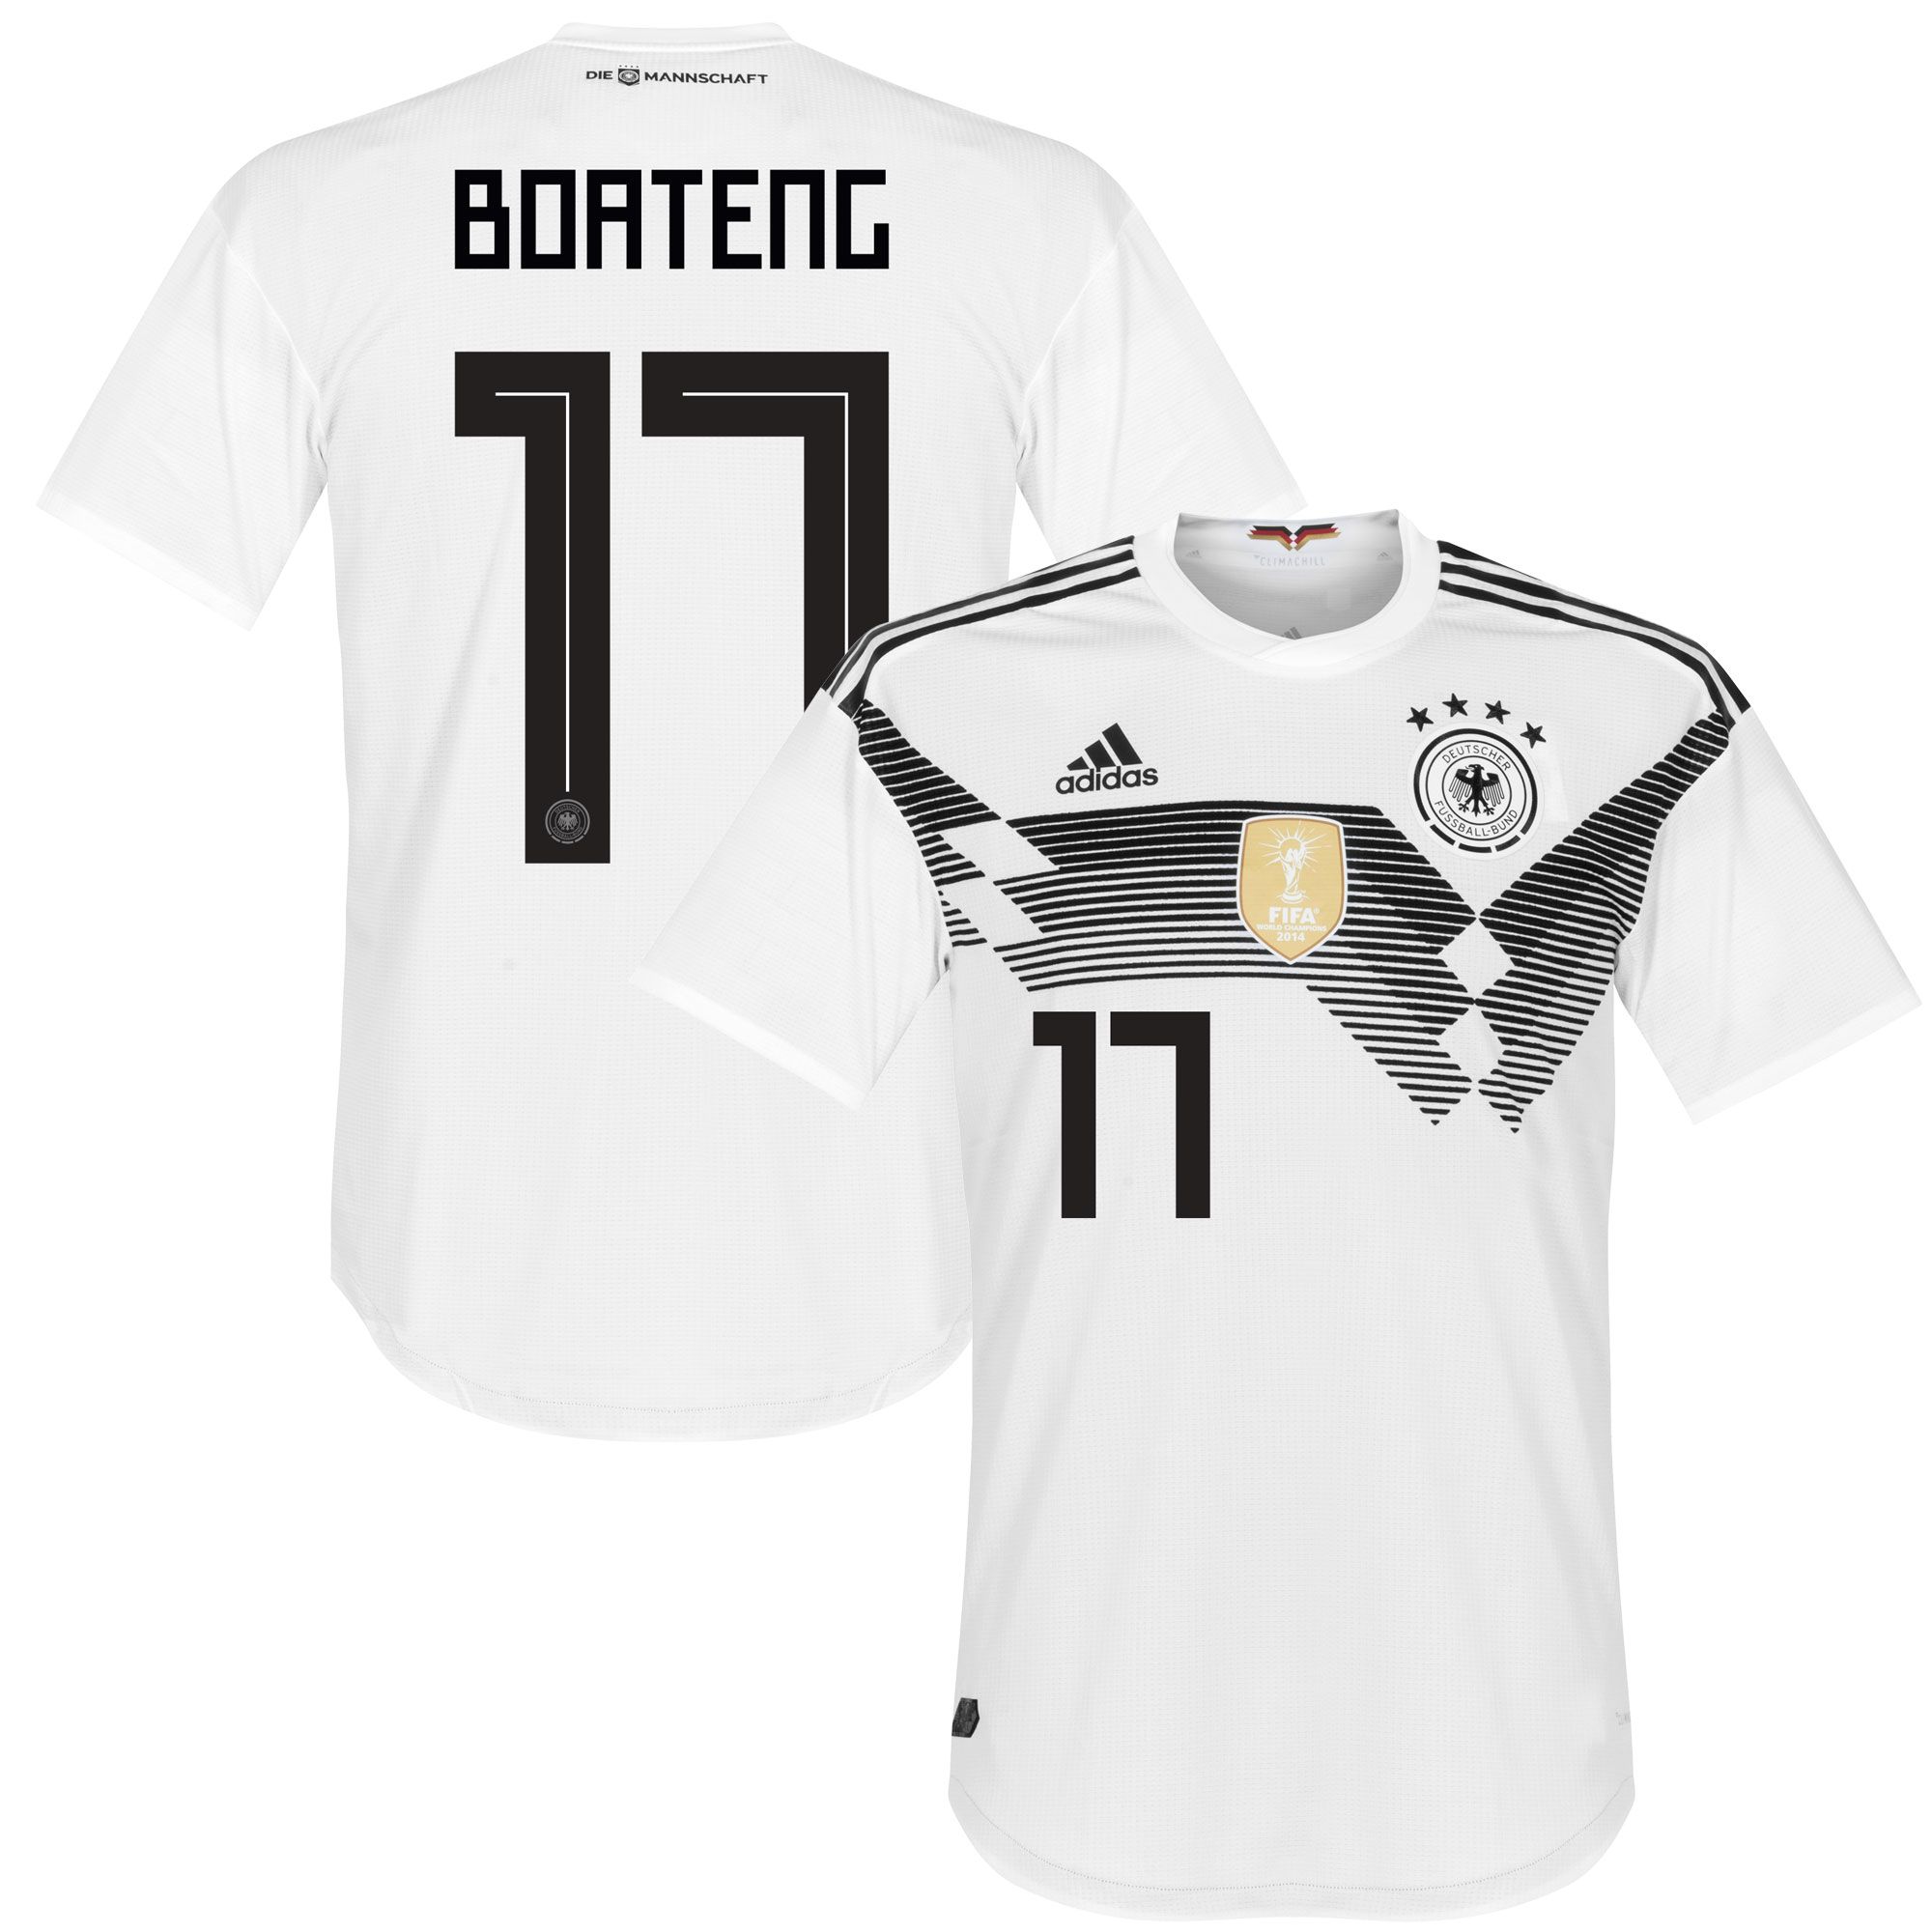 Duitsland Shirt Thuis 2018-2019 + Boateng 17 46